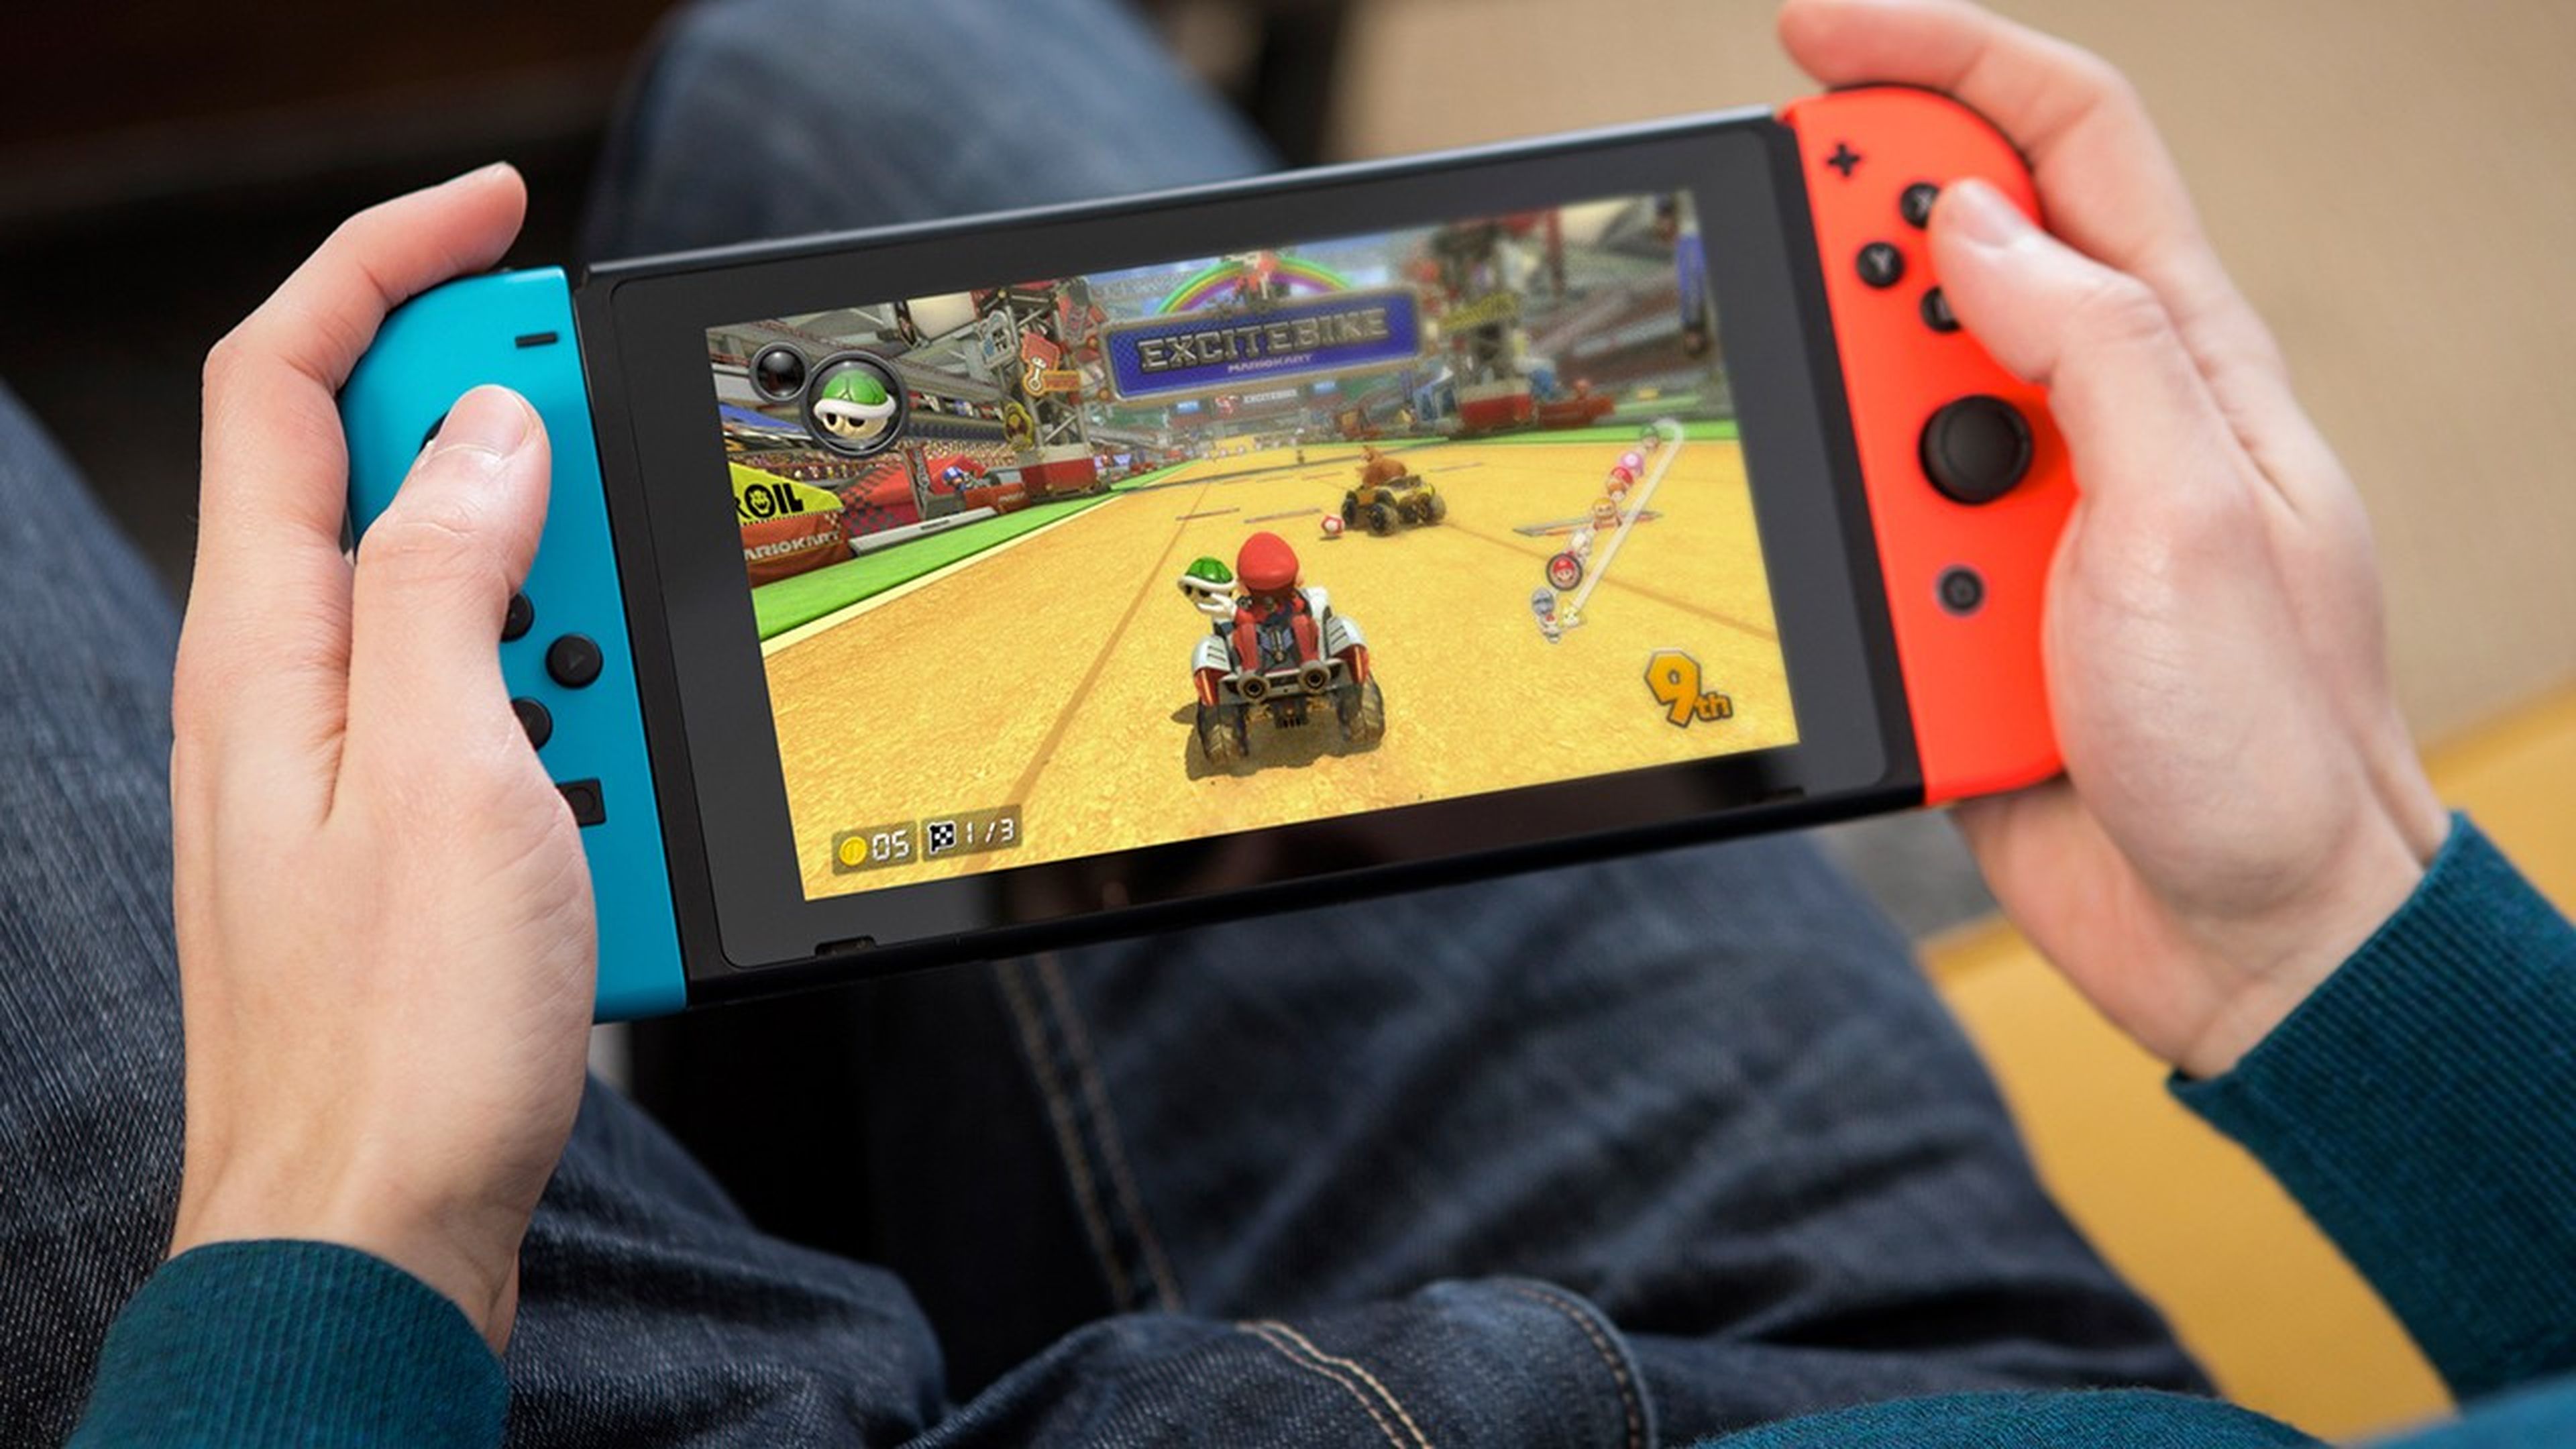 Ciberofertas de Nintendo Switch: más de 1000 juegos en oferta antes del  Black Friday - Meristation